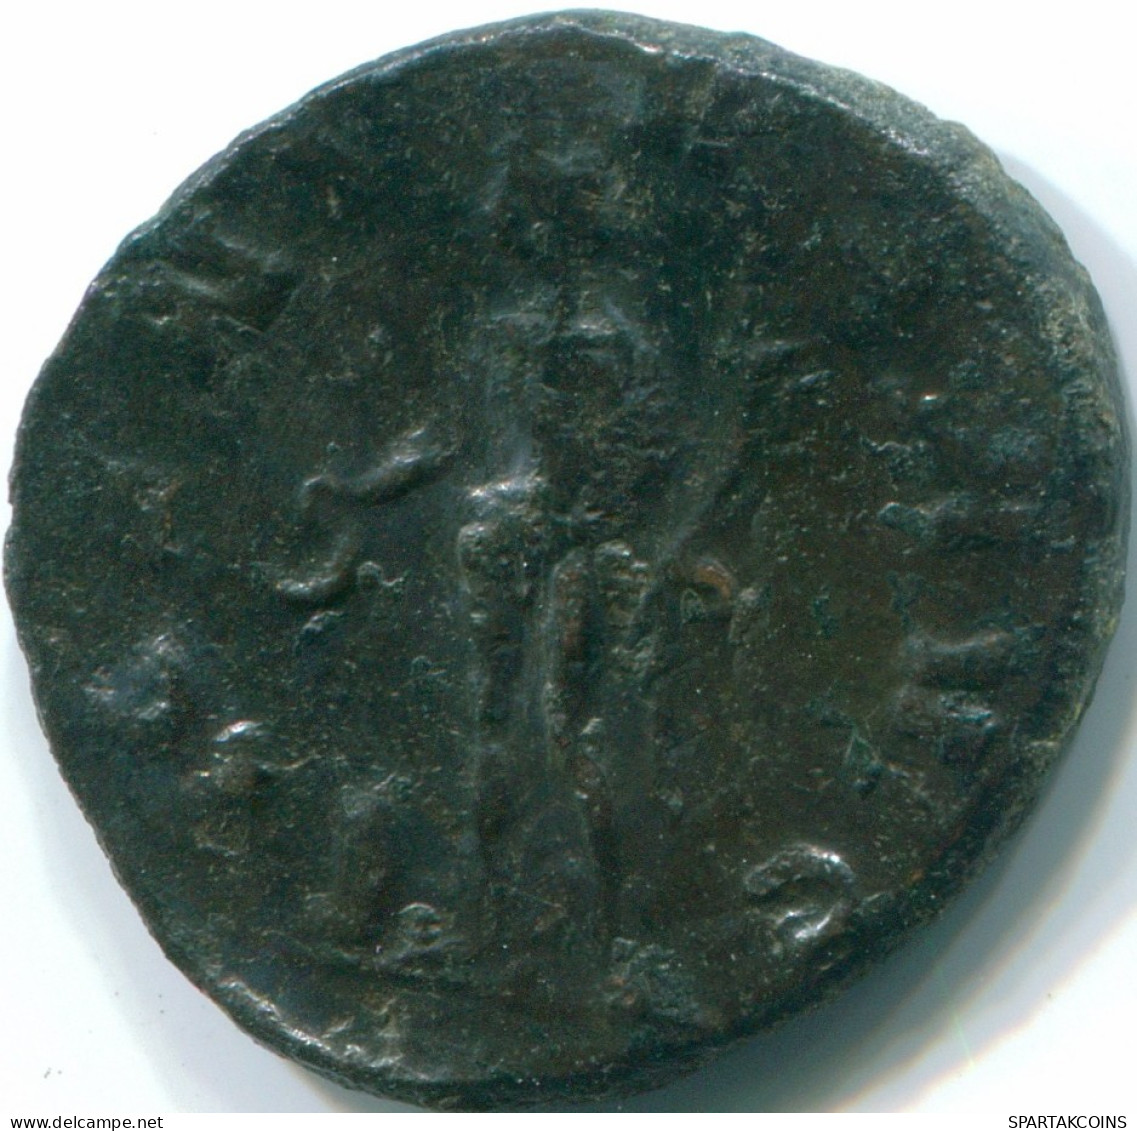 CLAUDIUS II "GOTHICUS" ANTONINIANUS AEQVITAS AVG 3.45g/19.77mm #ROM1001.8.U.A - La Crisi Militare (235 / 284)